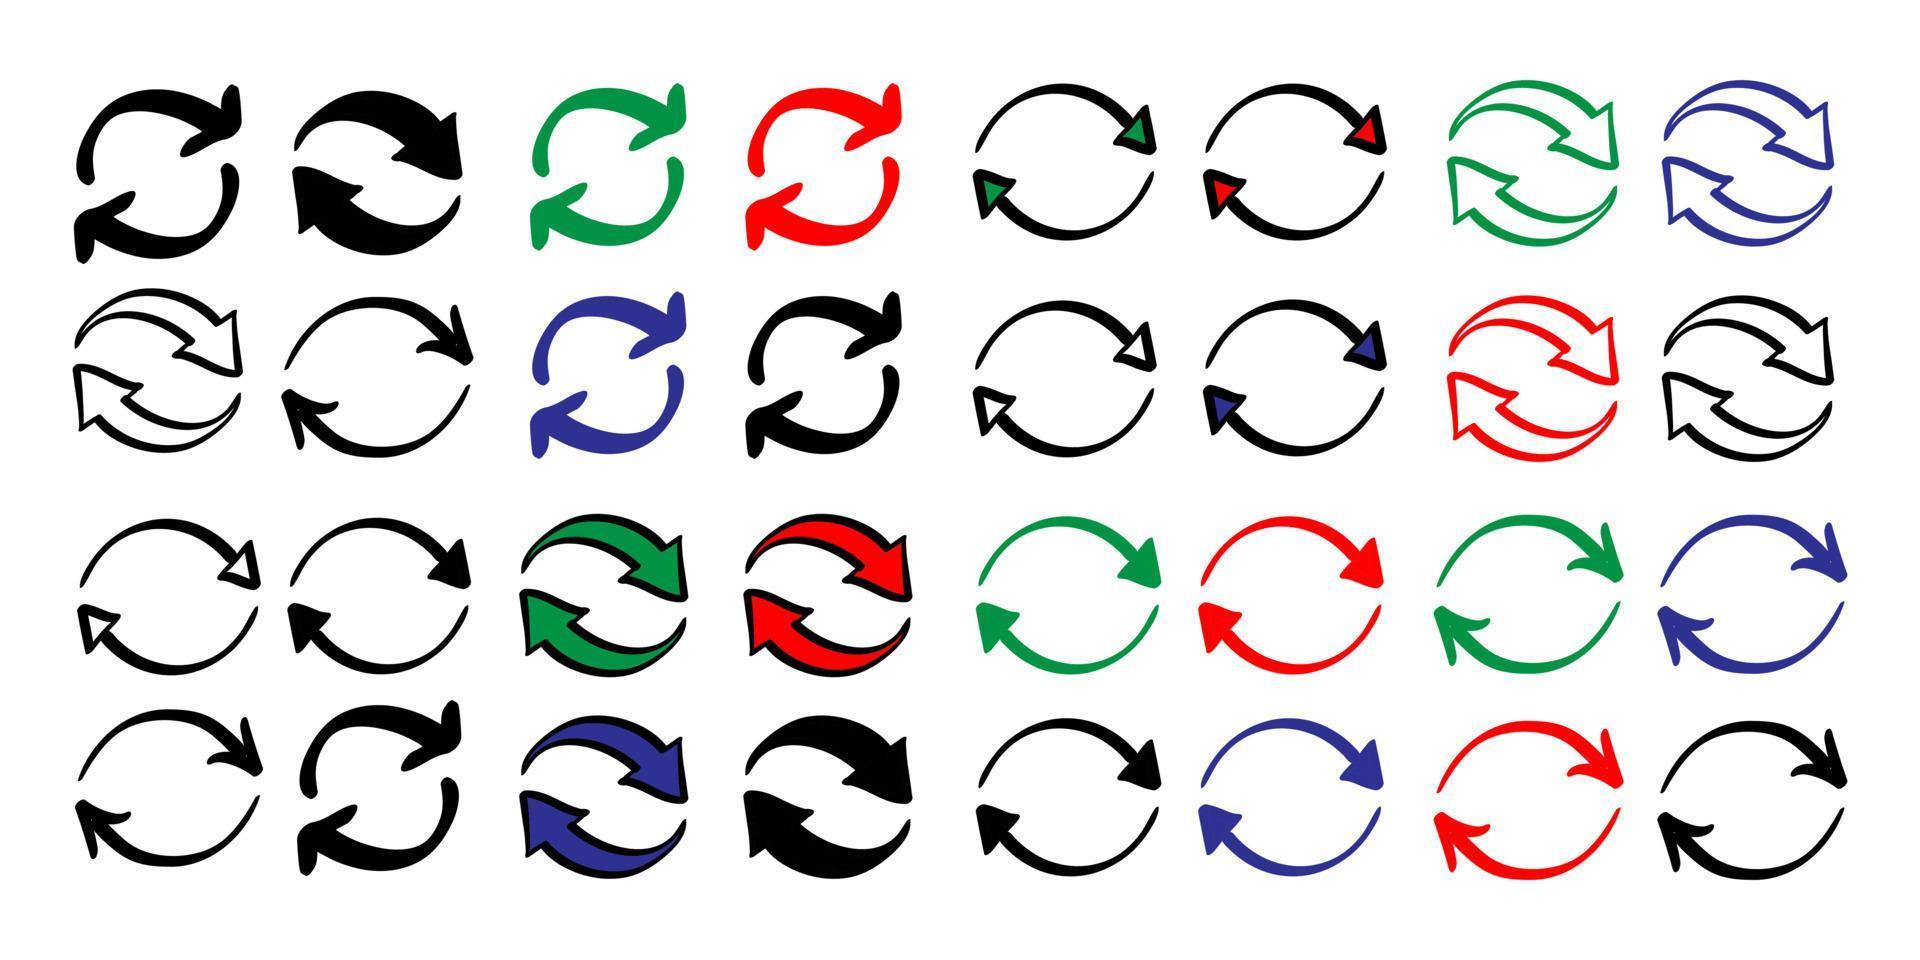 conjunto de ícone de seta de troca circular reversa dupla desenhada à mão no estilo doodle vetor